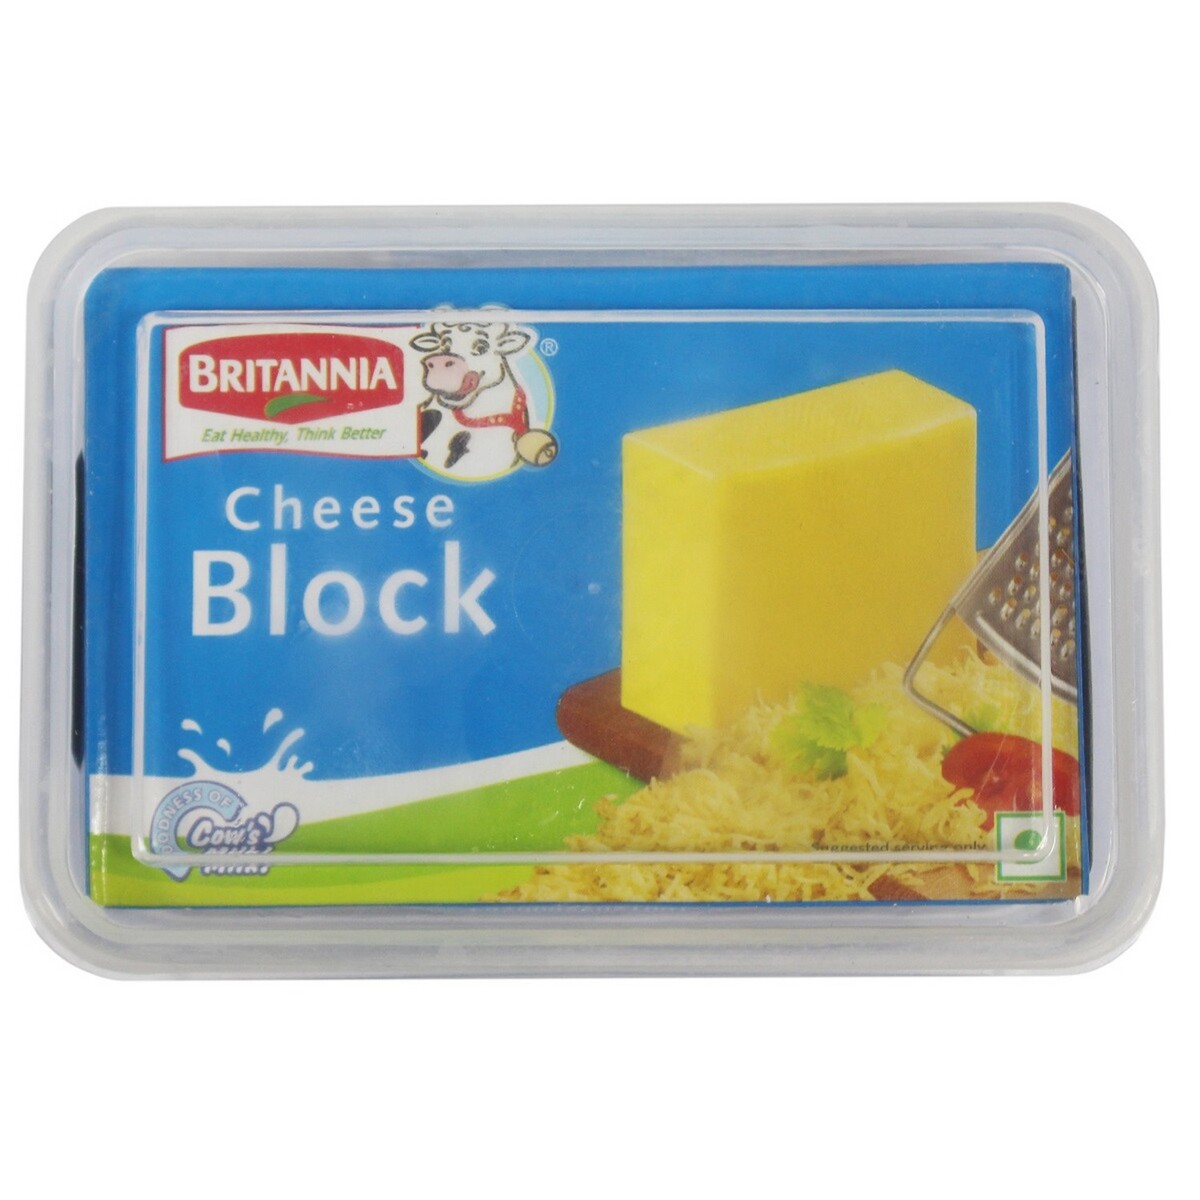 Britannia Cheese Block 200g